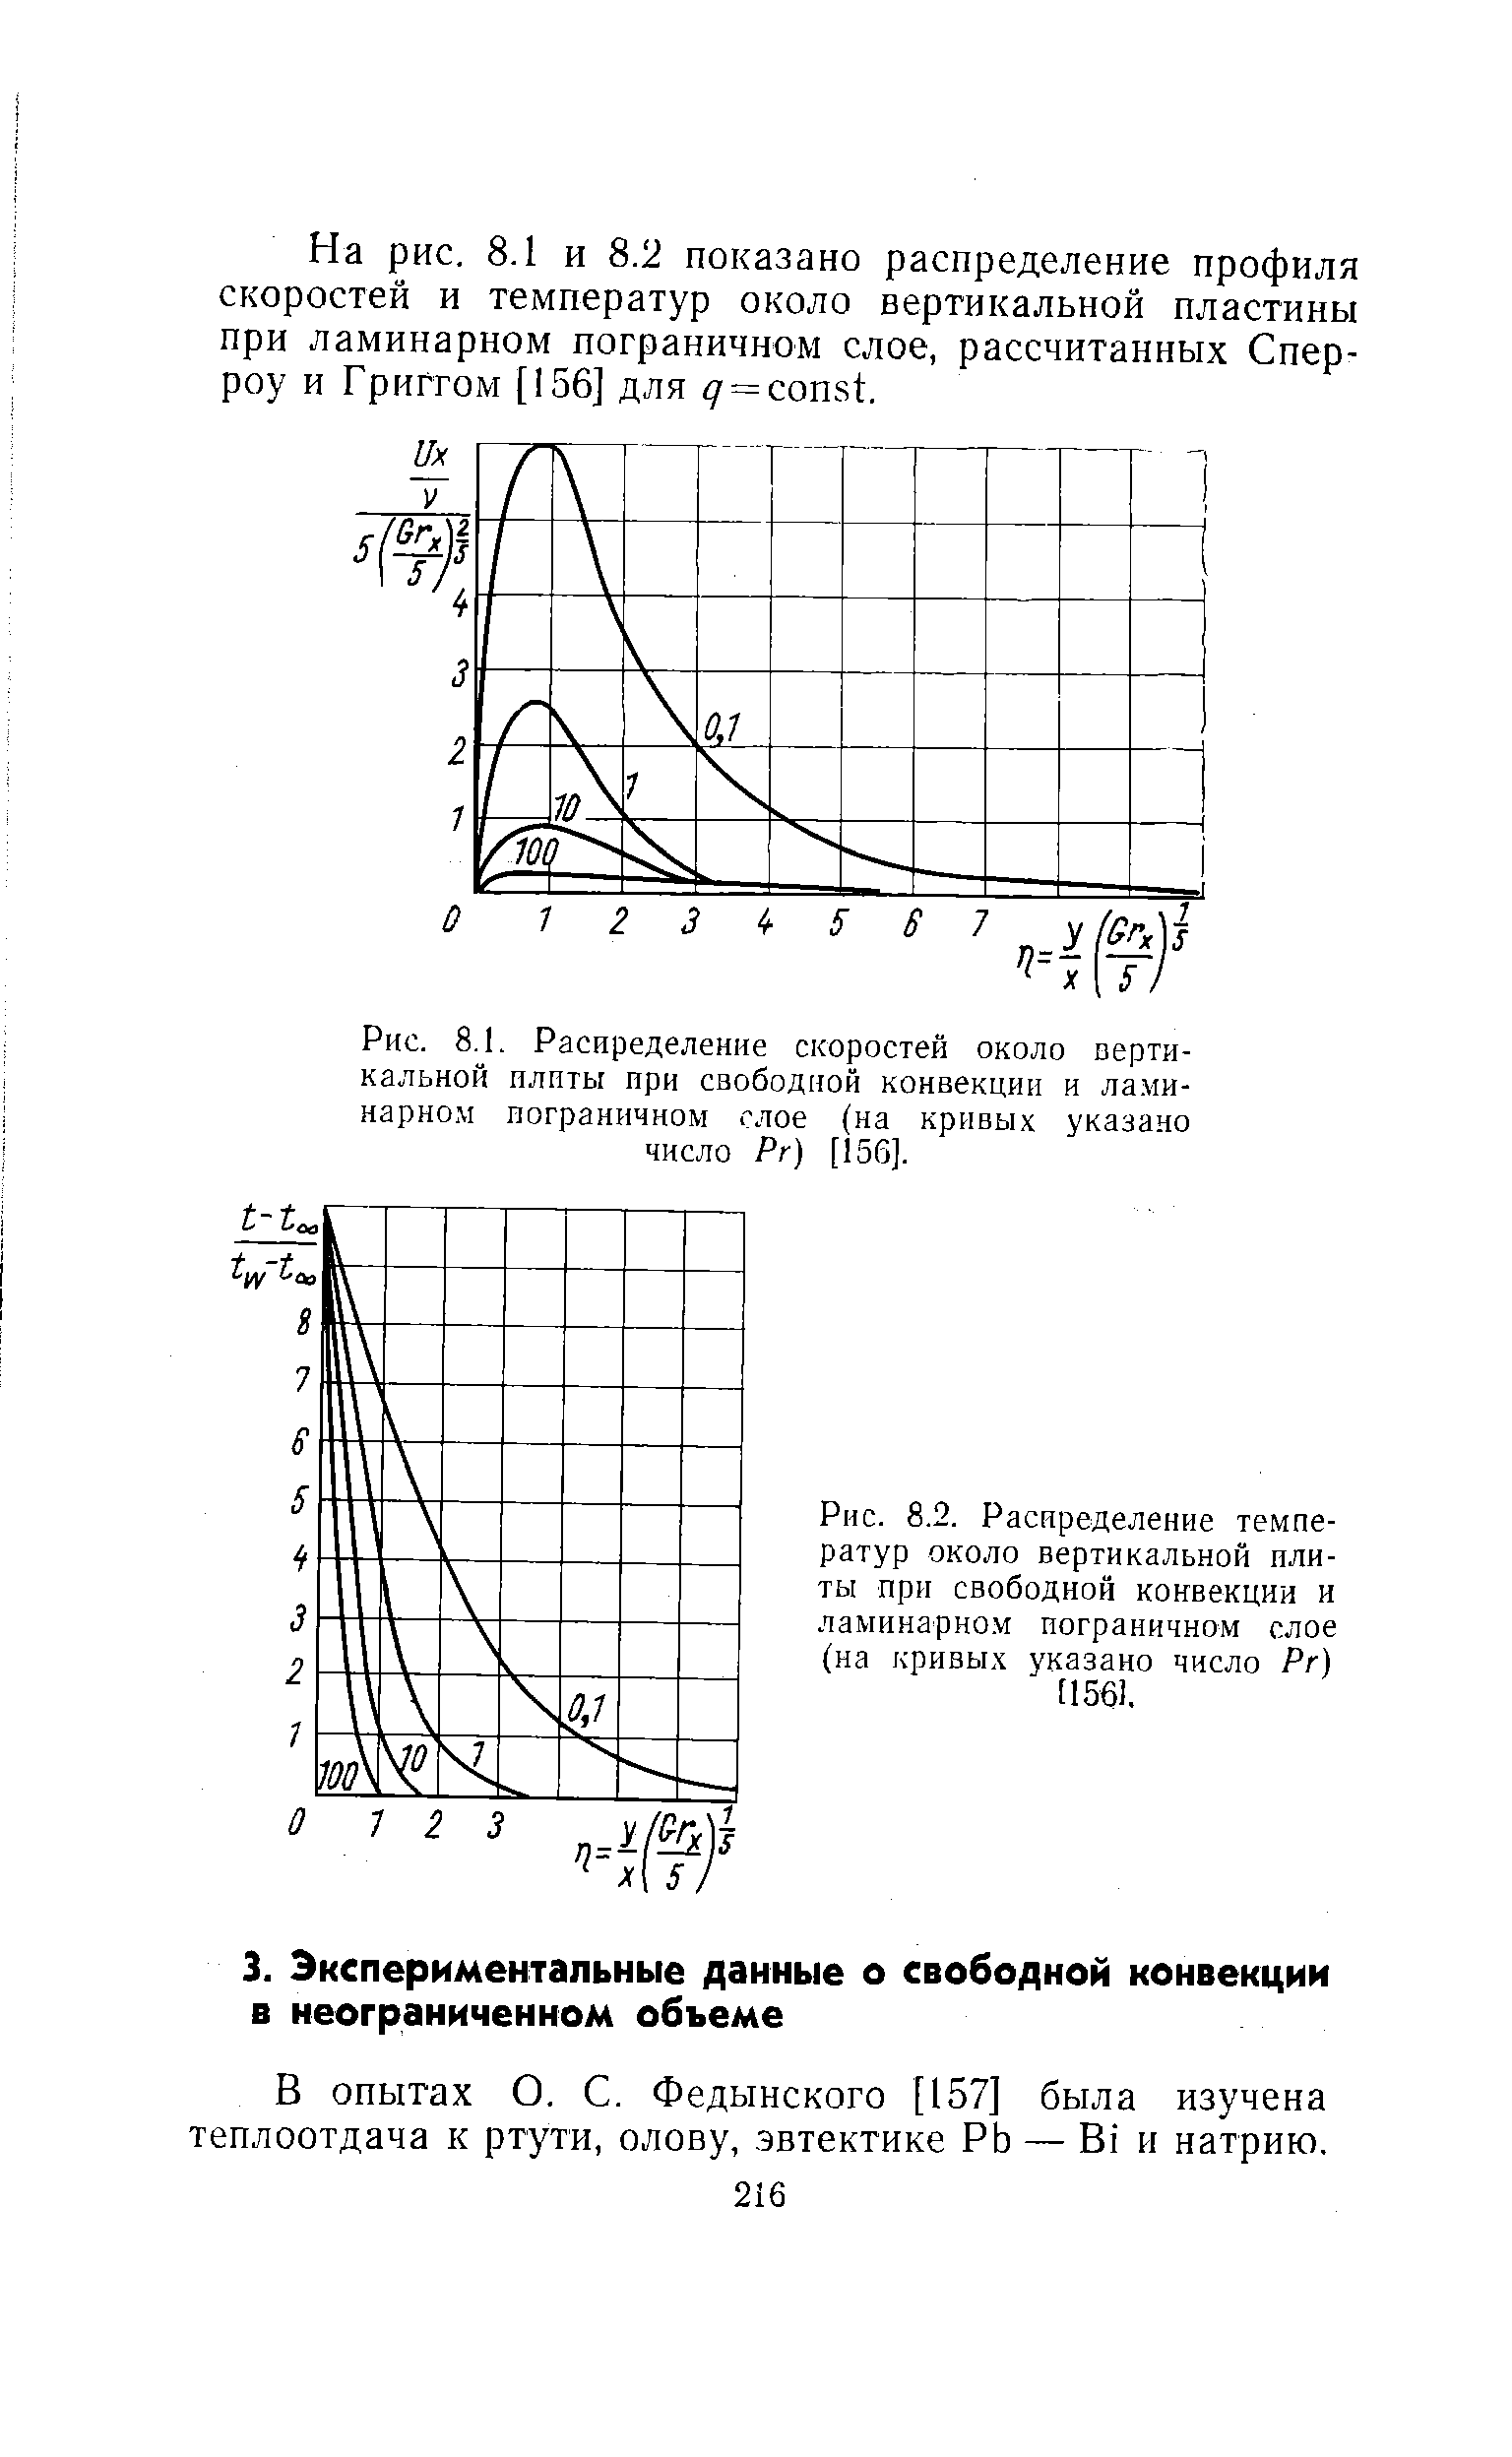 Рис. 8.2. Расиределение температур около вертикальной плиты при <a href="/info/29165">свободной конвекции</a> и <a href="/info/19795">ламинарном пограничном слое</a> (на кривых указано число Рг) [1561,
